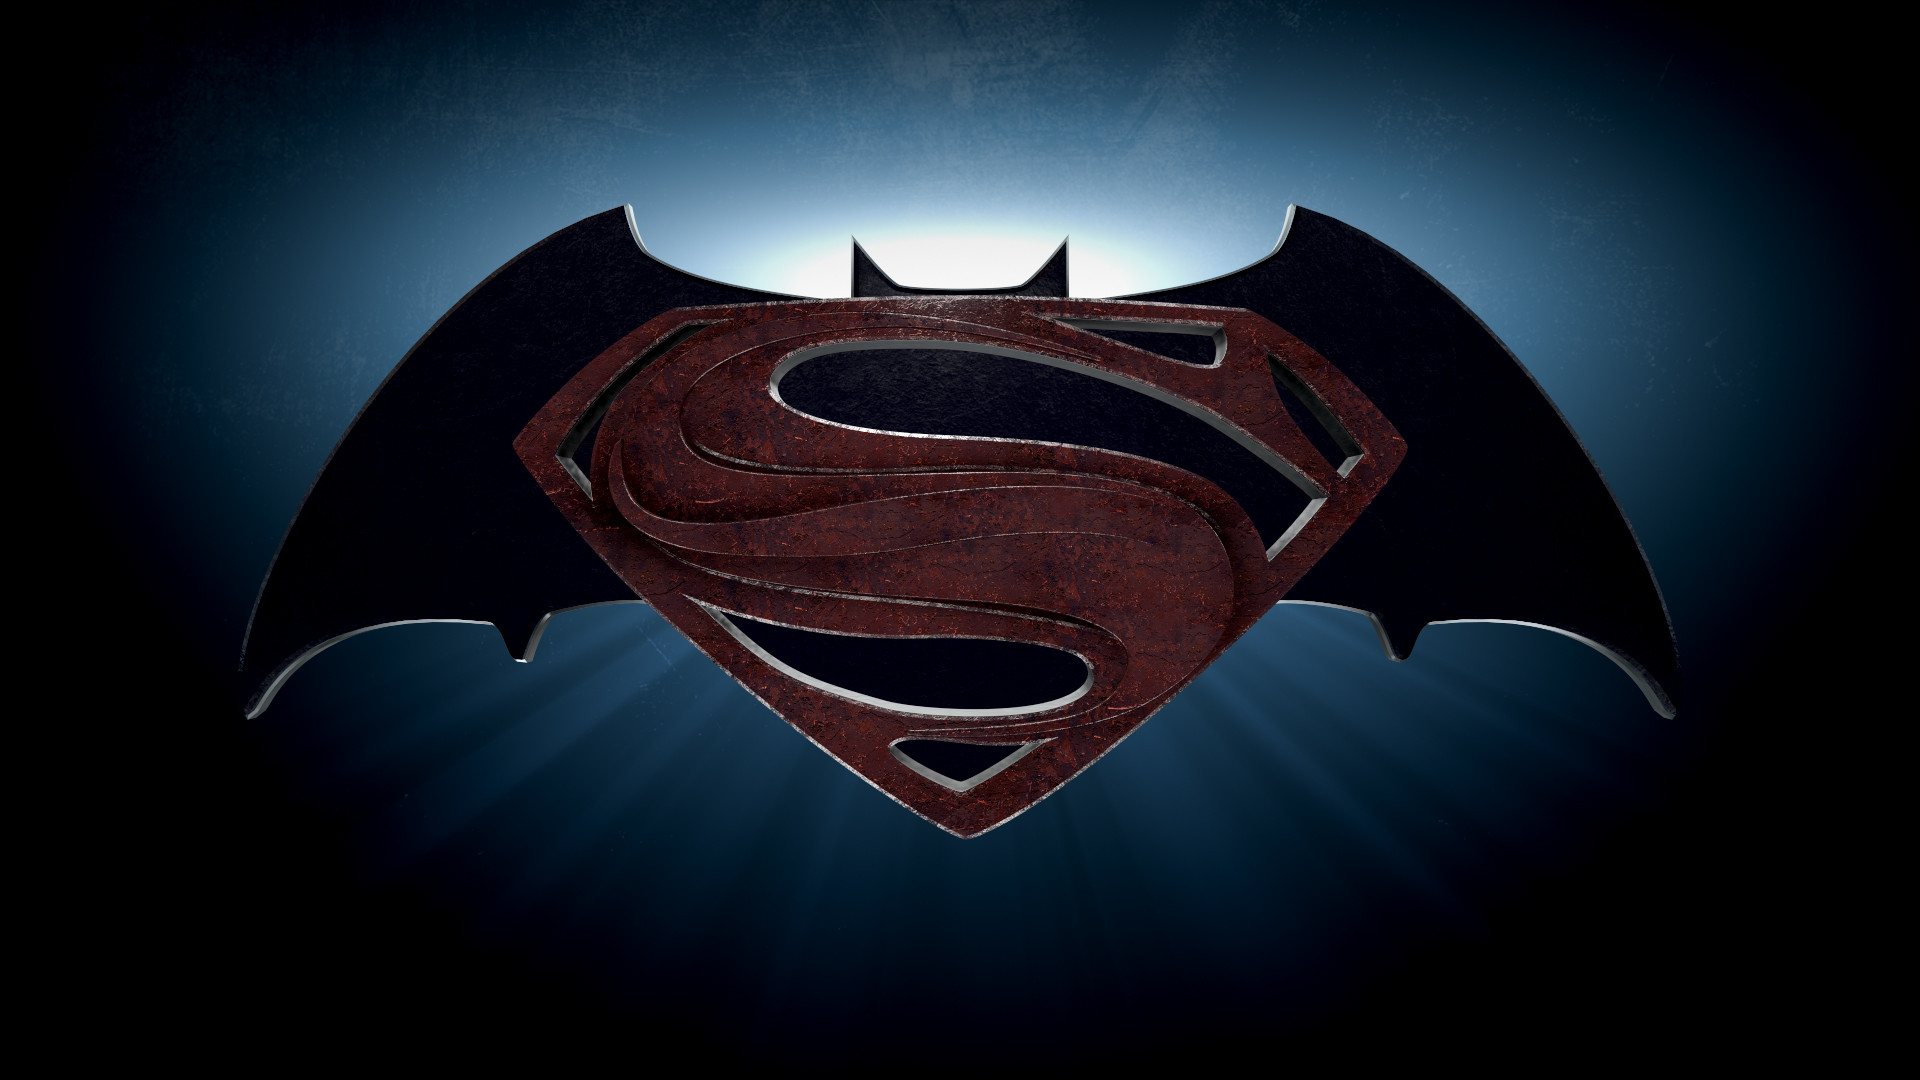 50+] Batman vs Superman Symbol Wallpaper - WallpaperSafari